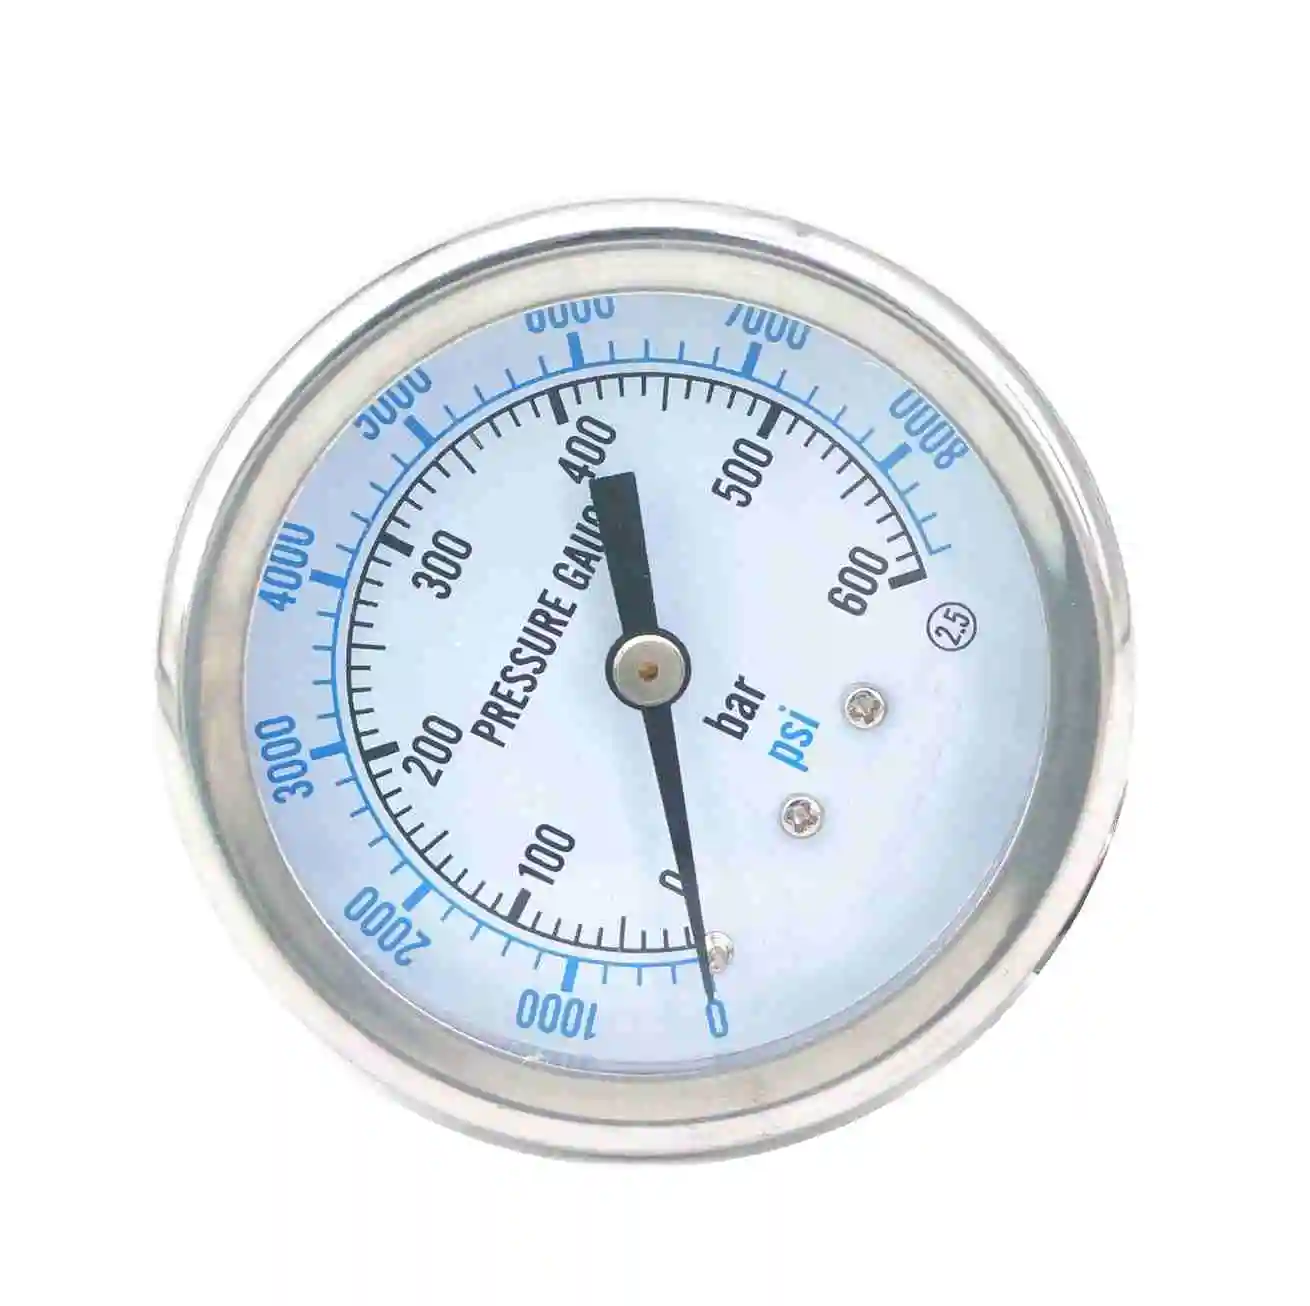 ENFM pressure gauge 2 1/2 pressure gauge 0-160 psi 1/4 NPT 